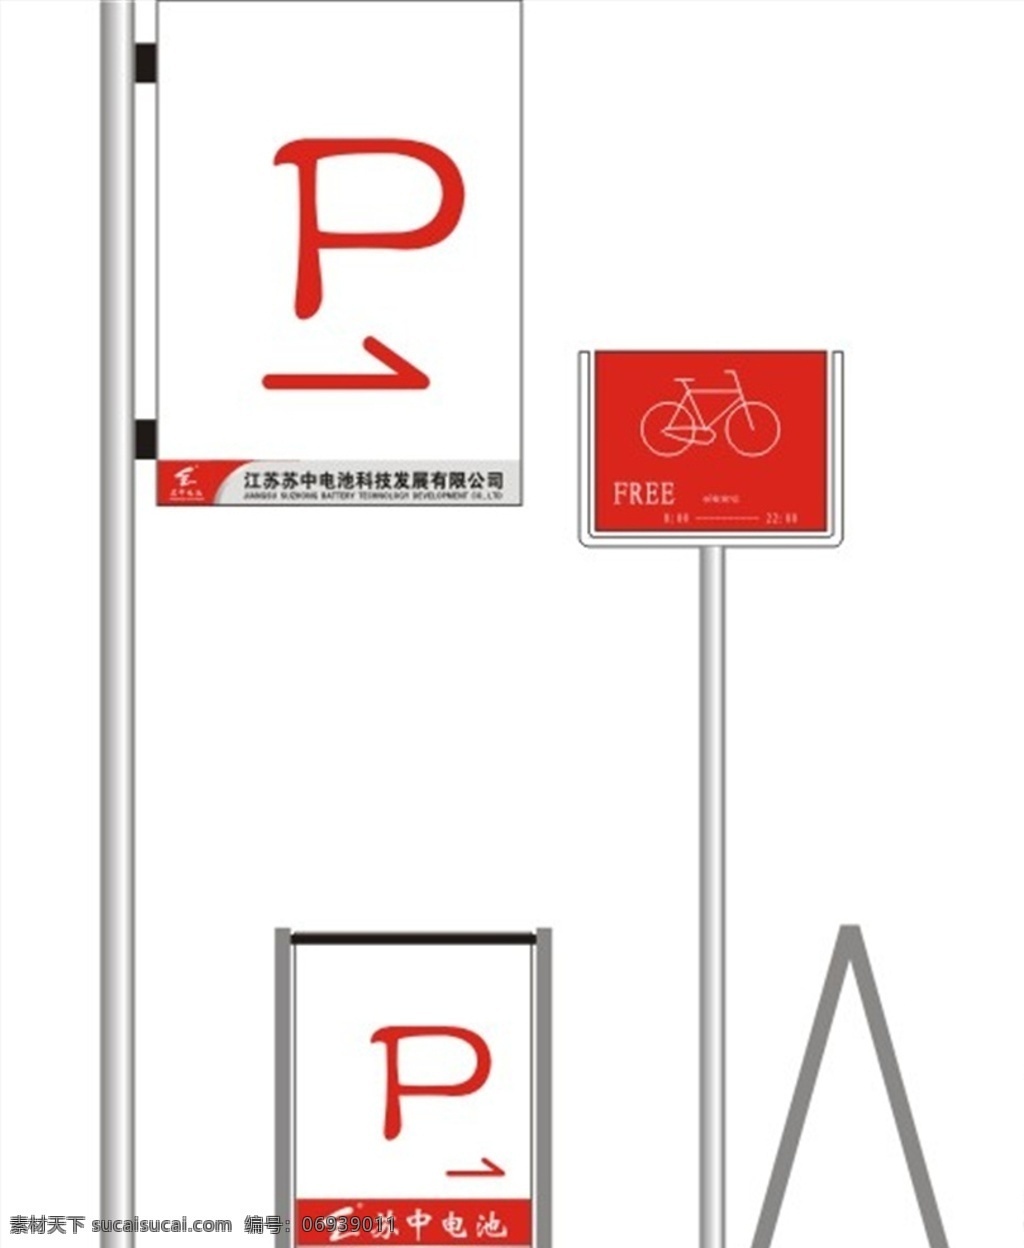 停车场标识牌 停车场 进出口标示牌 进口 出口 停车标识 泊车标识 停车指示牌 p 停车场指示牌 自行车停车